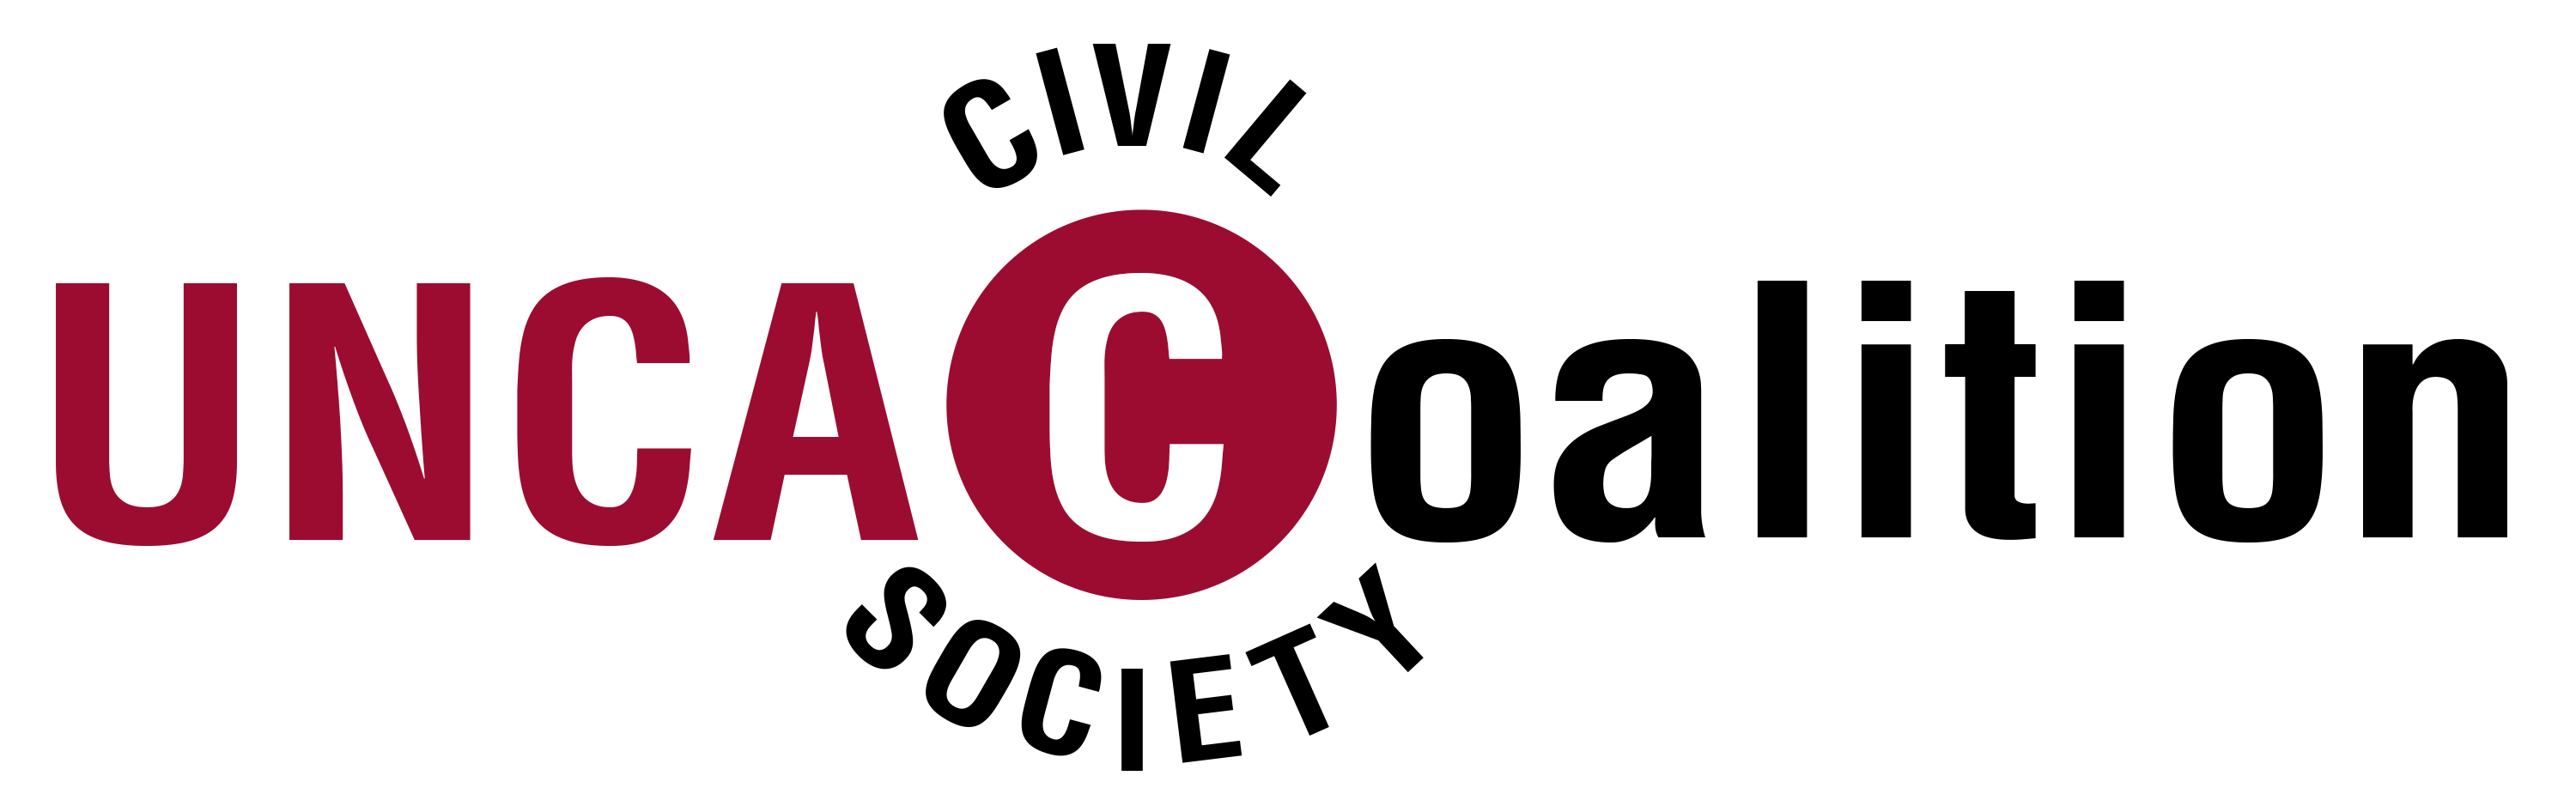 UNCAC Coalition Logo